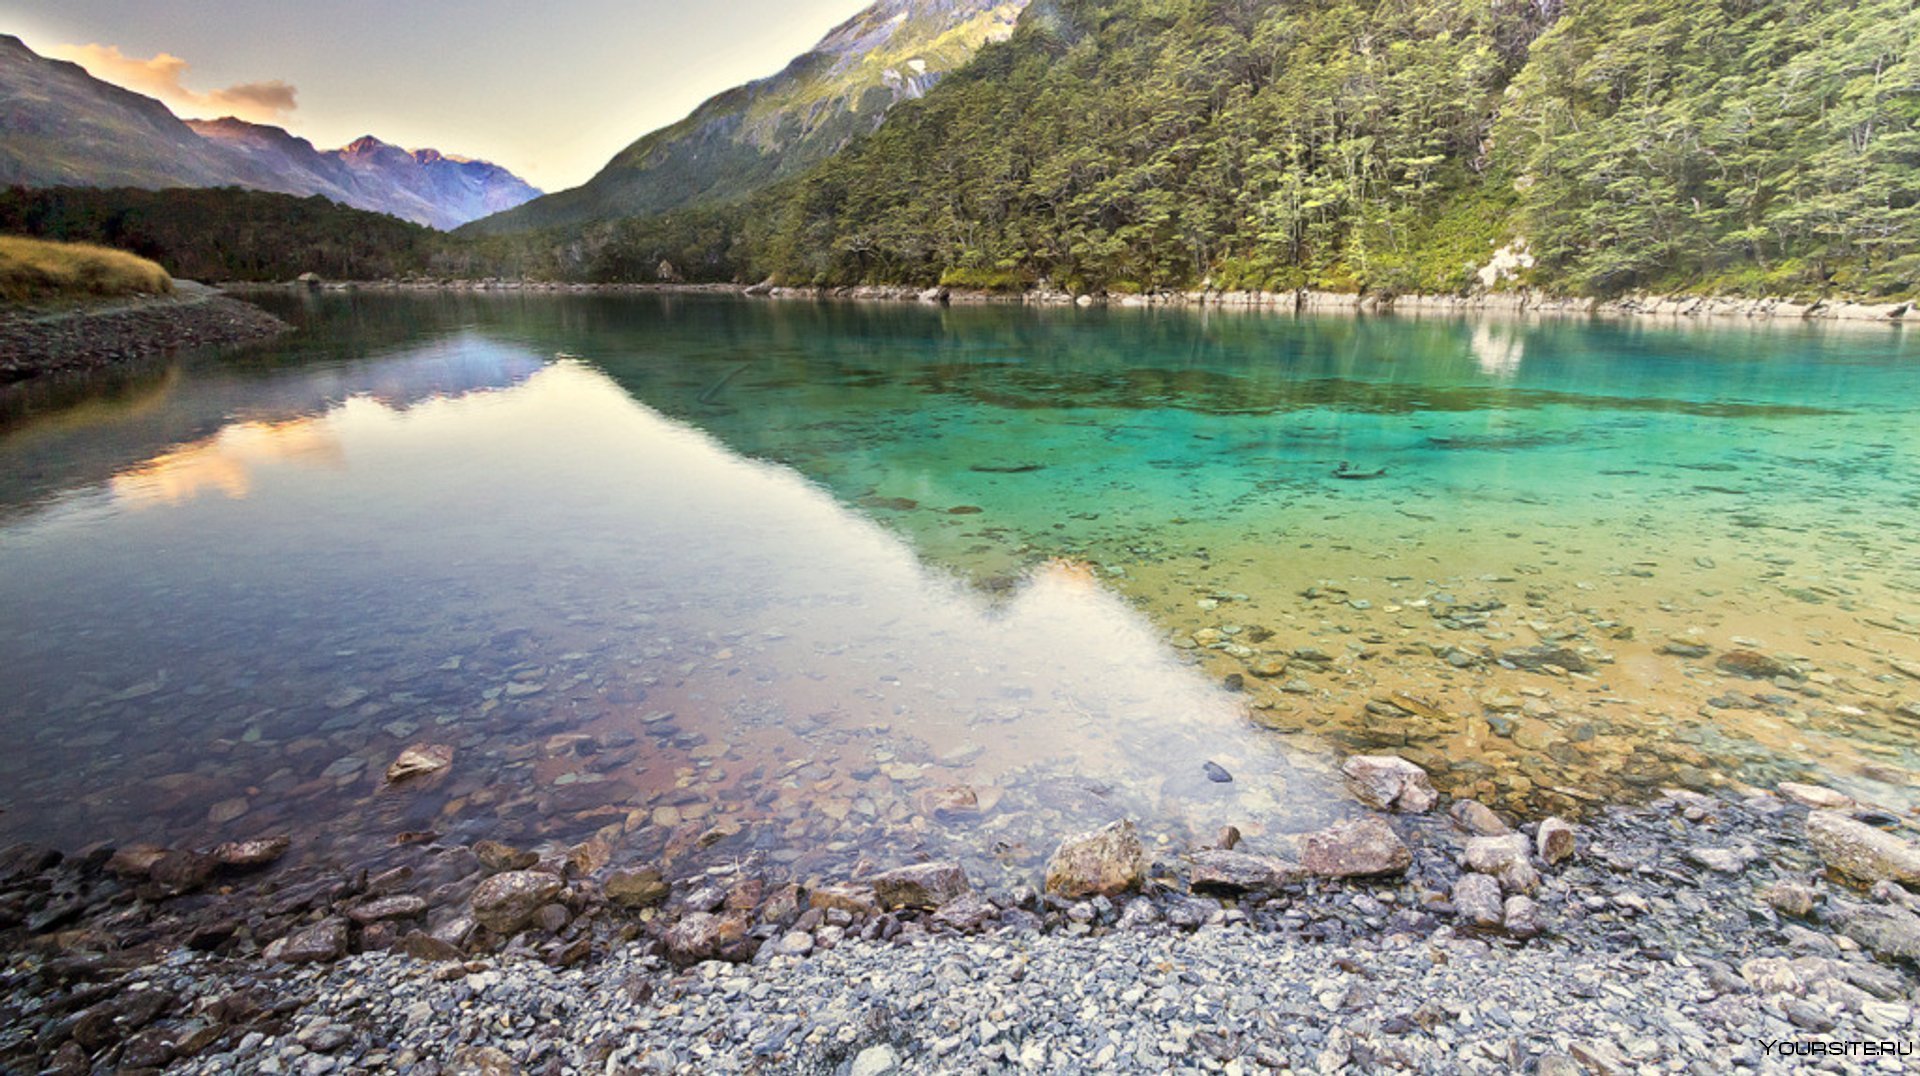 Северное озеро самое пресное. Голубое озеро Нельсон в новой Зеландии. Нельсон-Лейкс голубое озеро. Голубое озеро, национальный парк Нельсон-Лейкс, новая Зеландия. Голубое озеро в национальном парке Нельсон Лейкс.